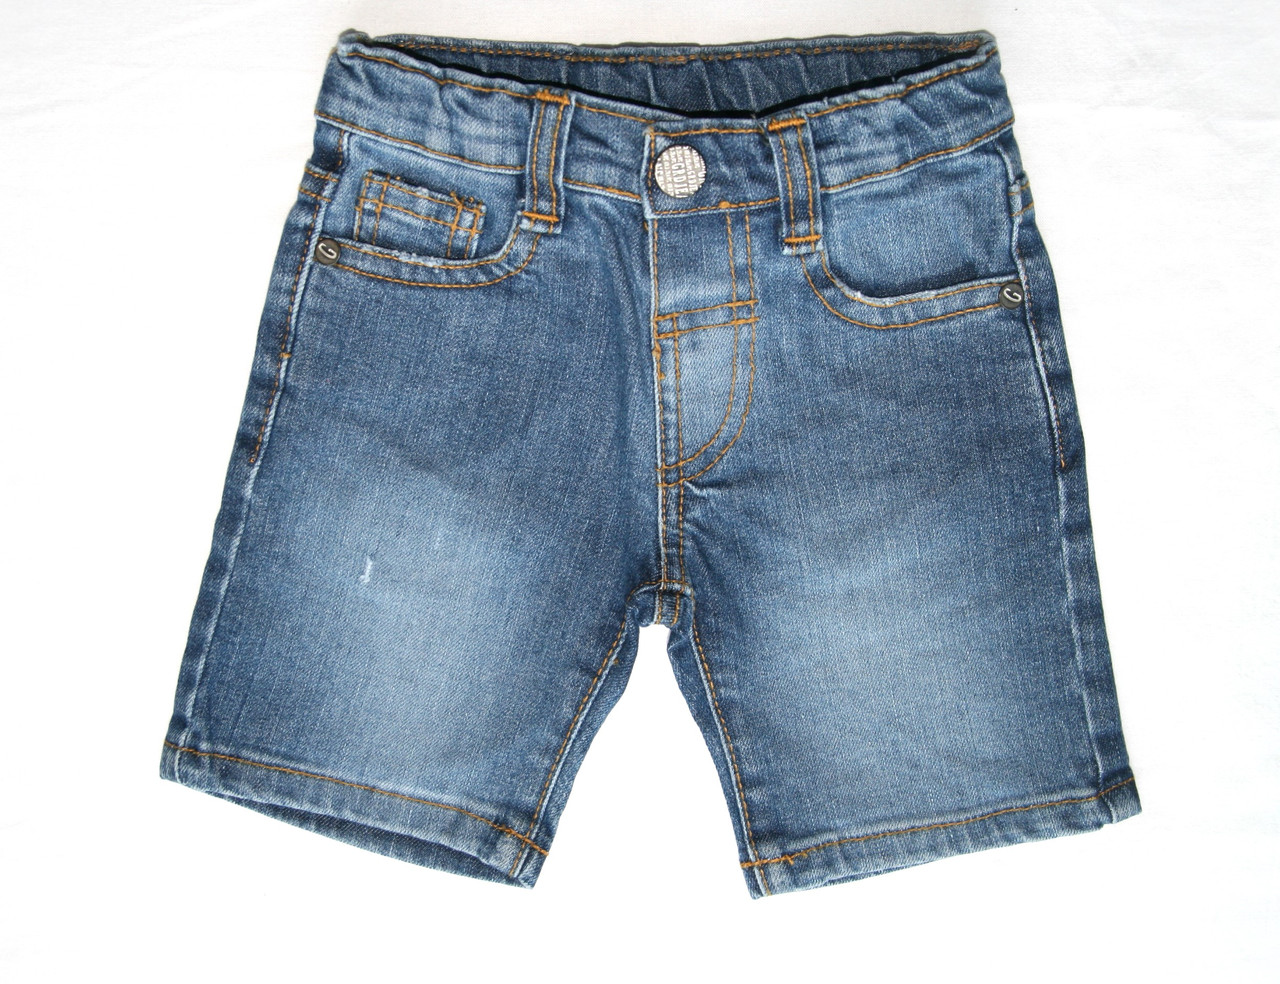 Джинсові шорти для хлопчика, темно-сині, Girandola, Португалія, розмір 98